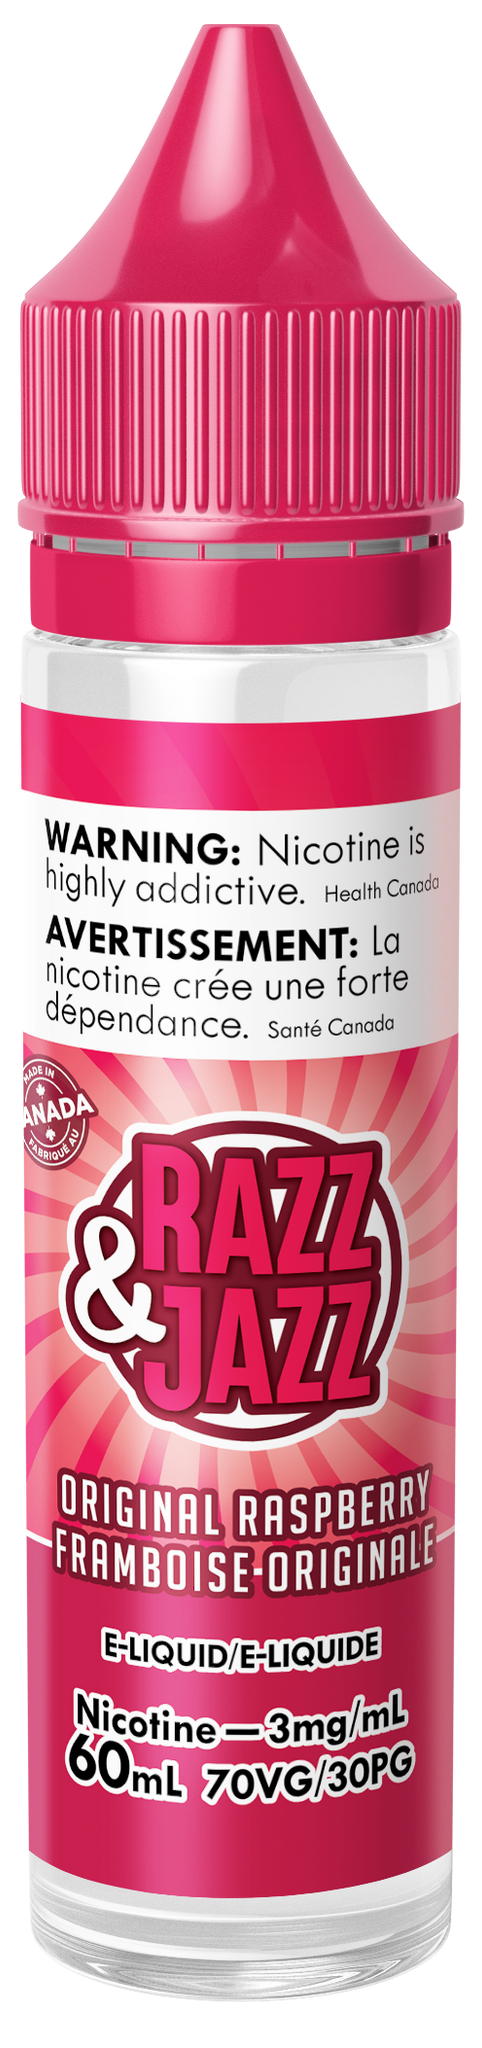 Razz and Jazz: Original Raspberry